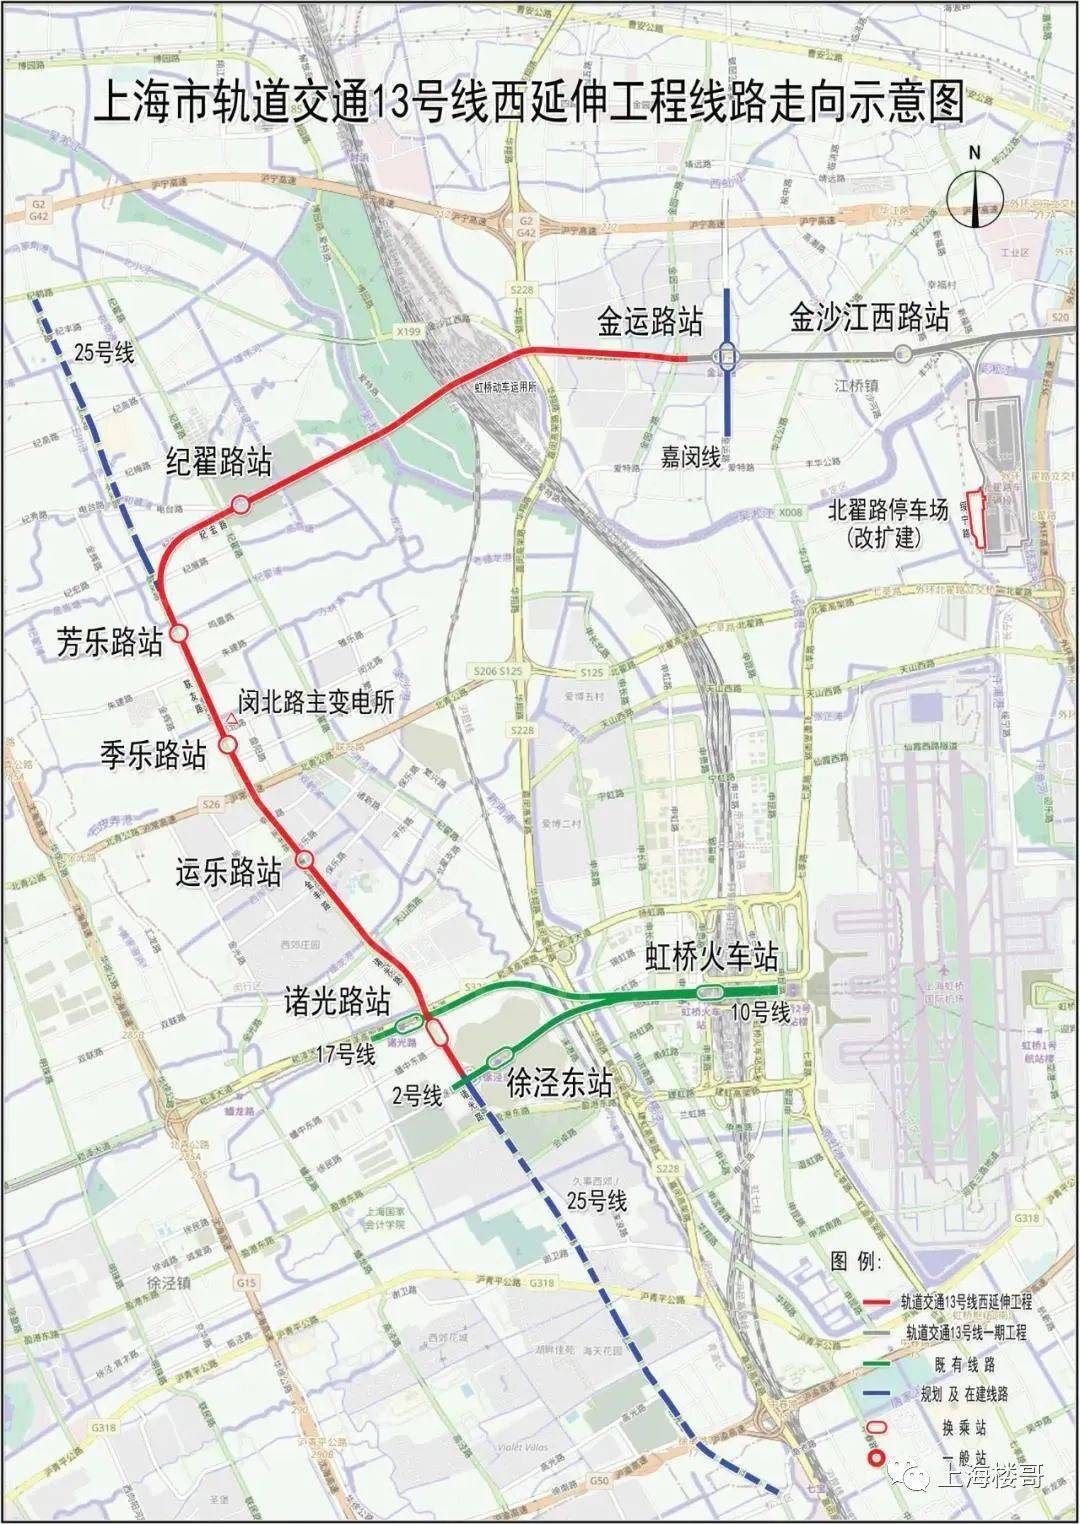 上海轨道交通再迎重磅进展!哪个板块利好最大?